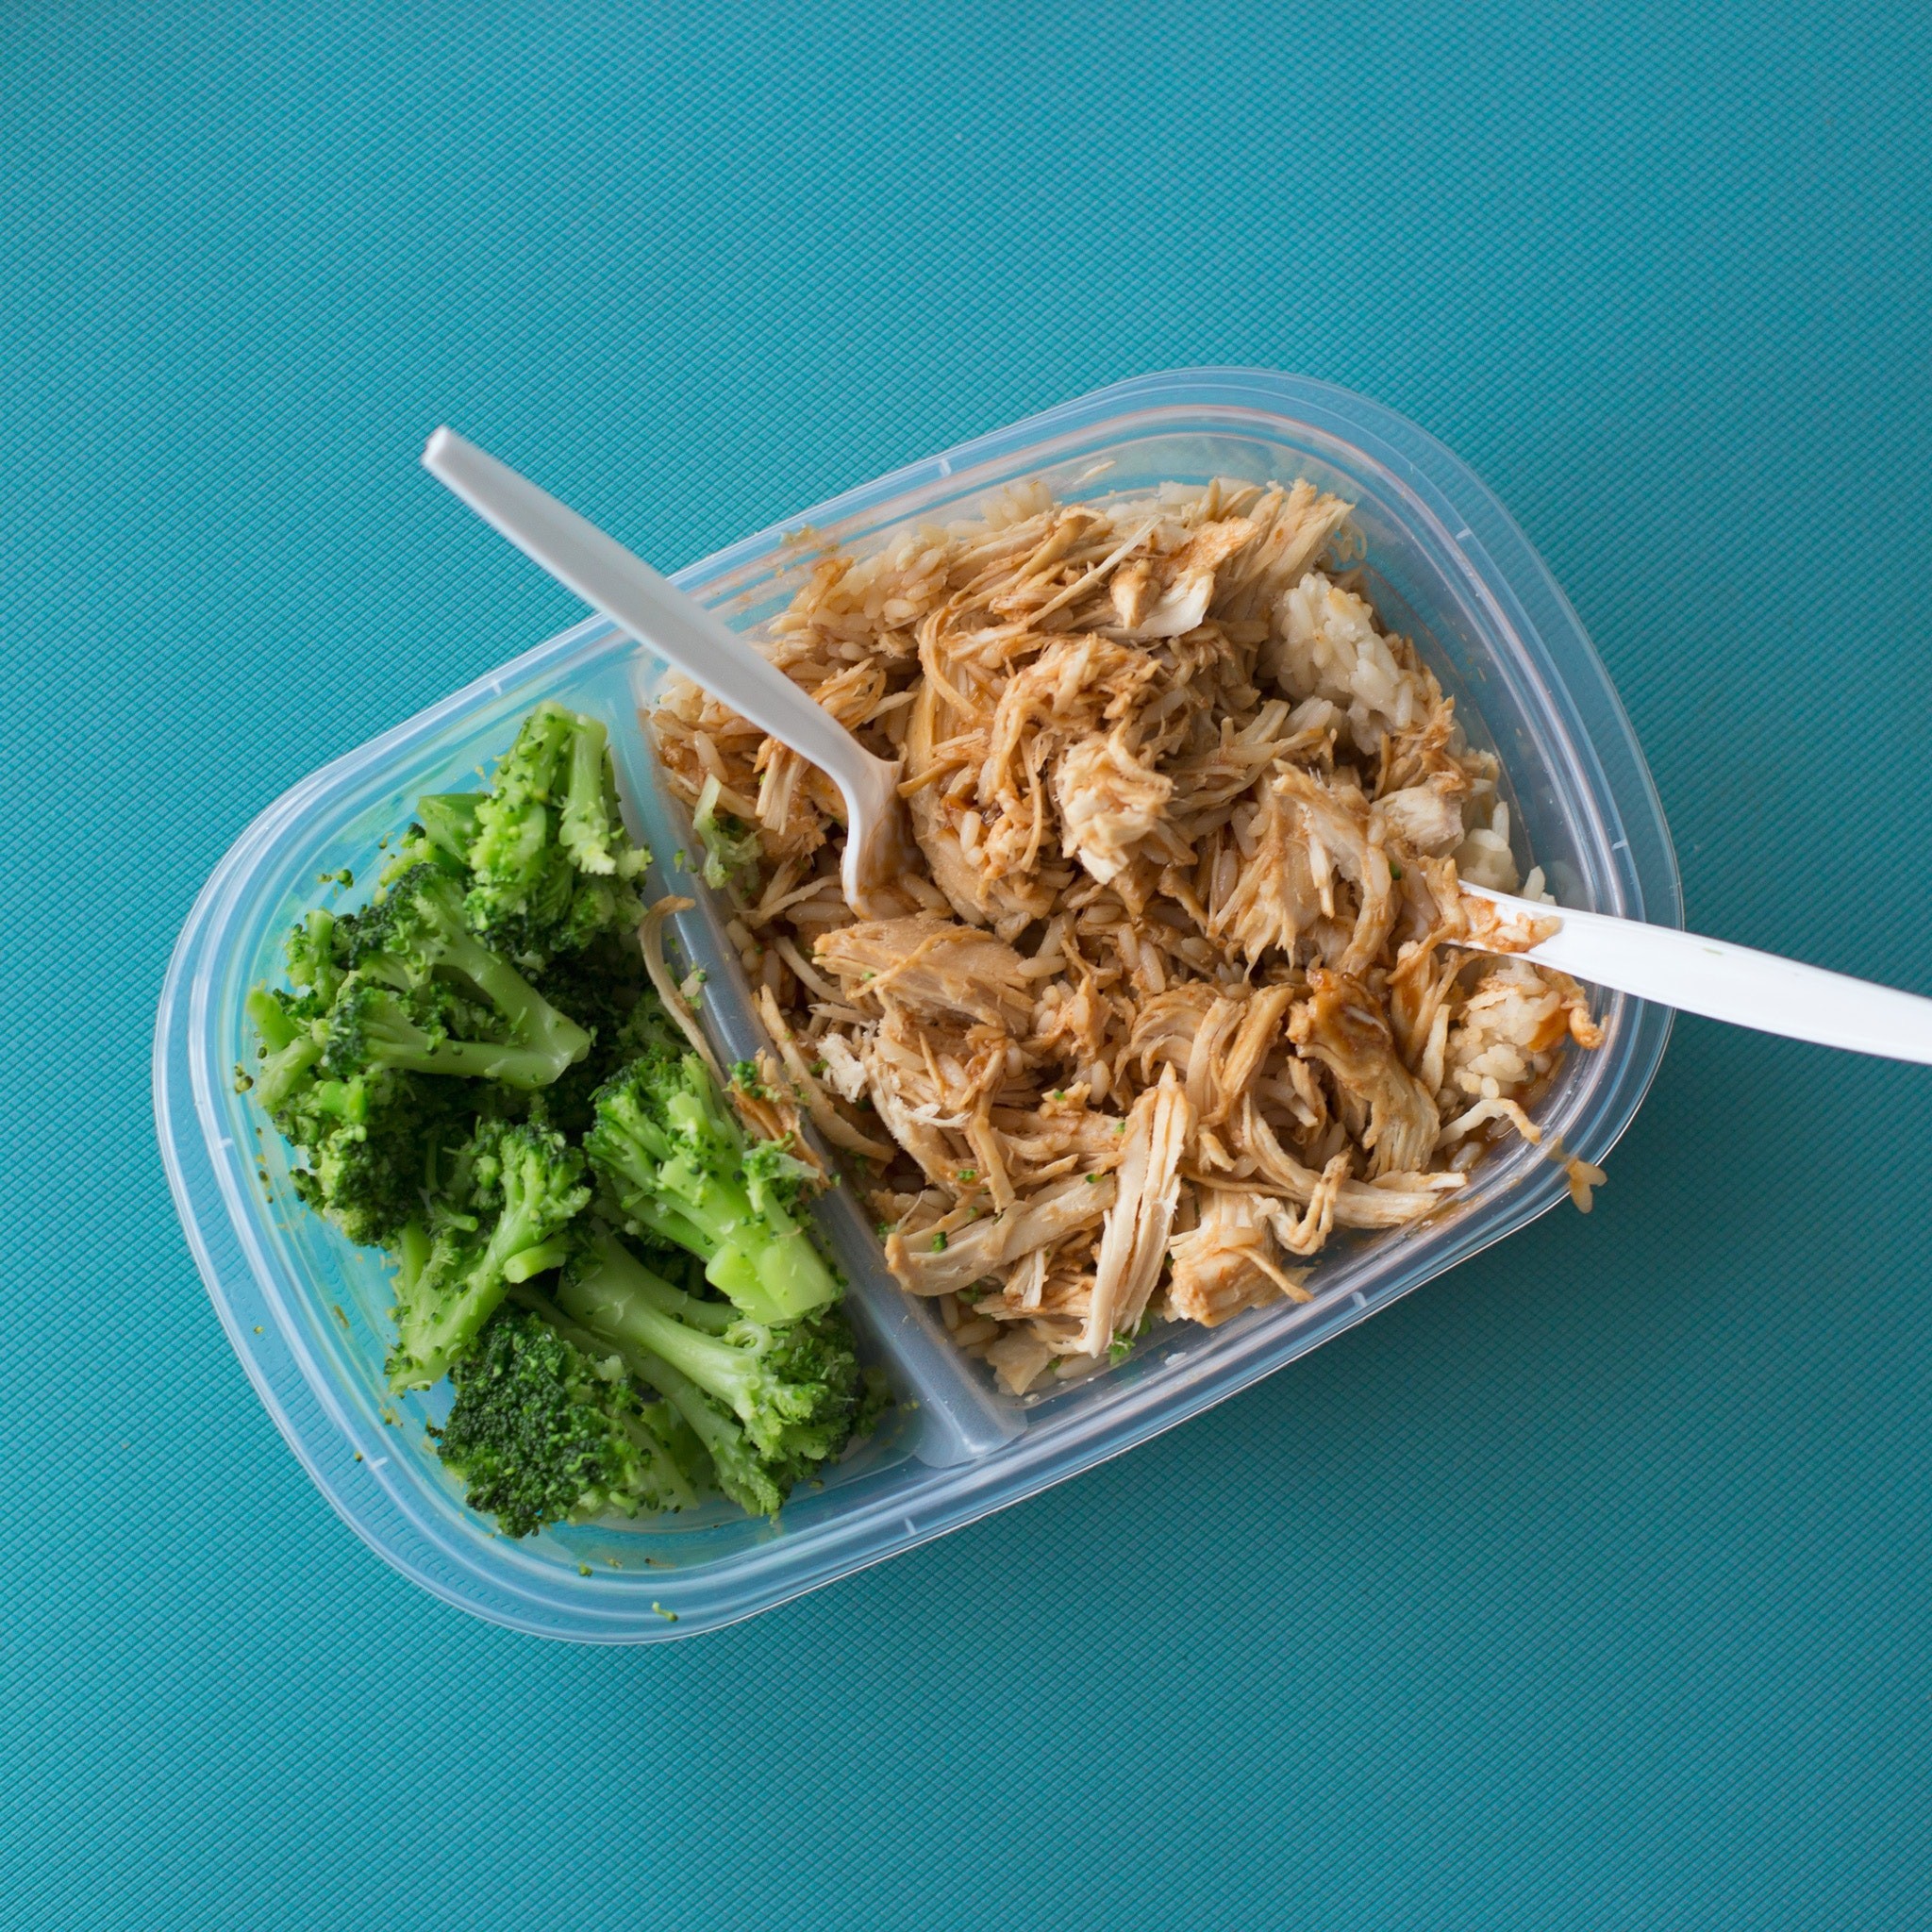 Como ter embalagens livres de contaminação. Acima: imagem de uma embalagem de plástico com comida (Foto: Keegan Evans/Pexels)